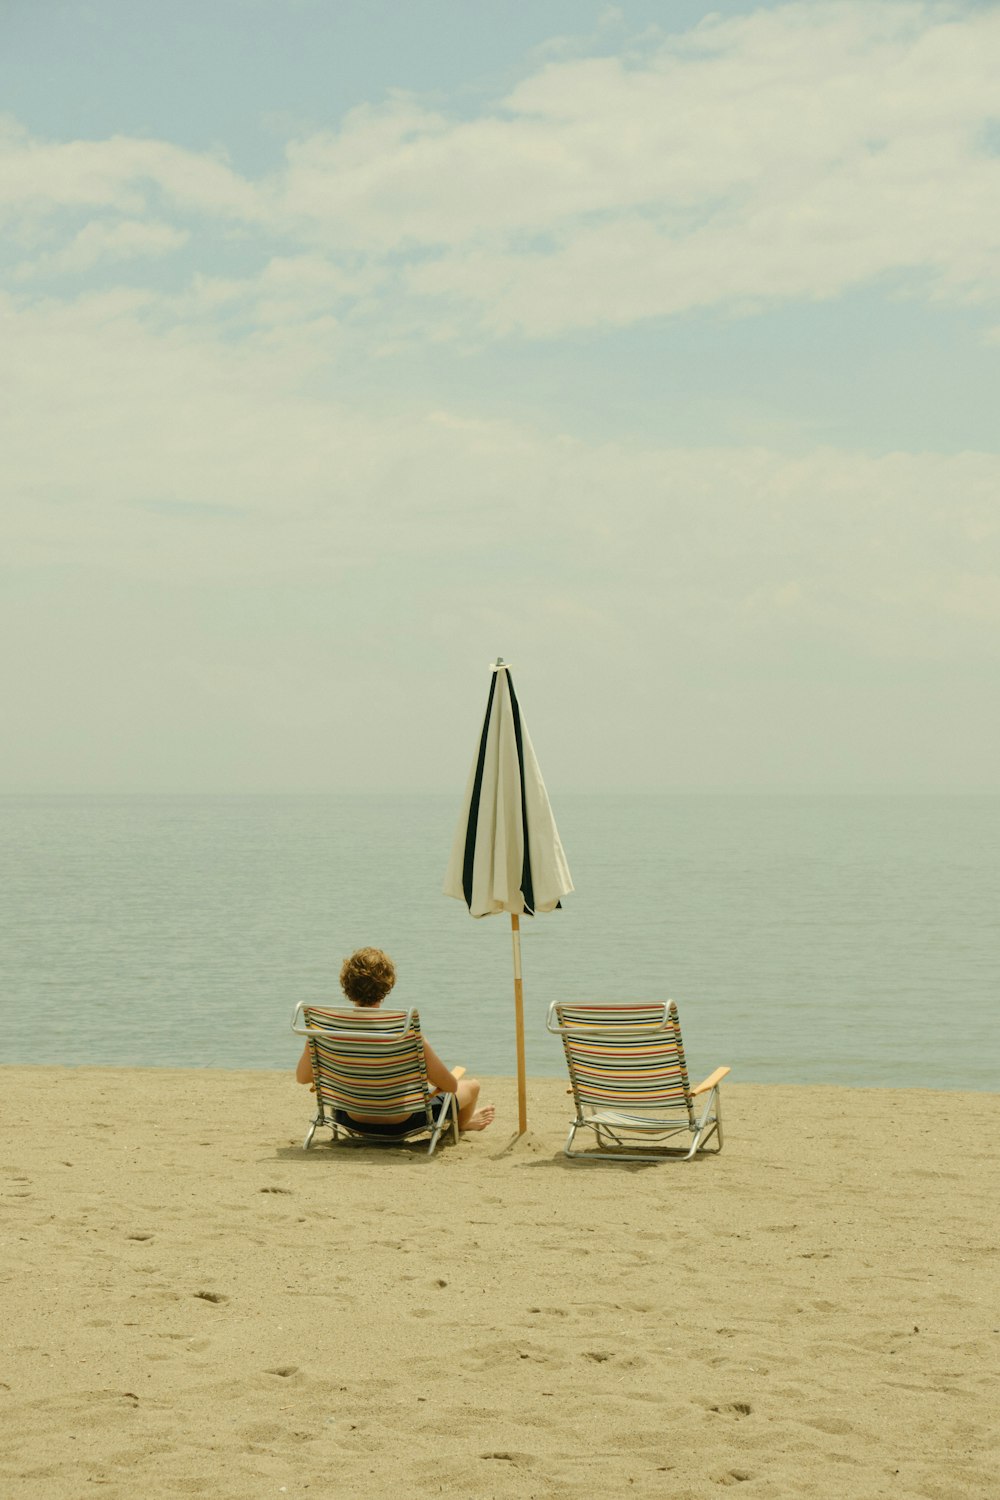 Eine Person, die am Strand unter einem Sonnenschirm sitzt